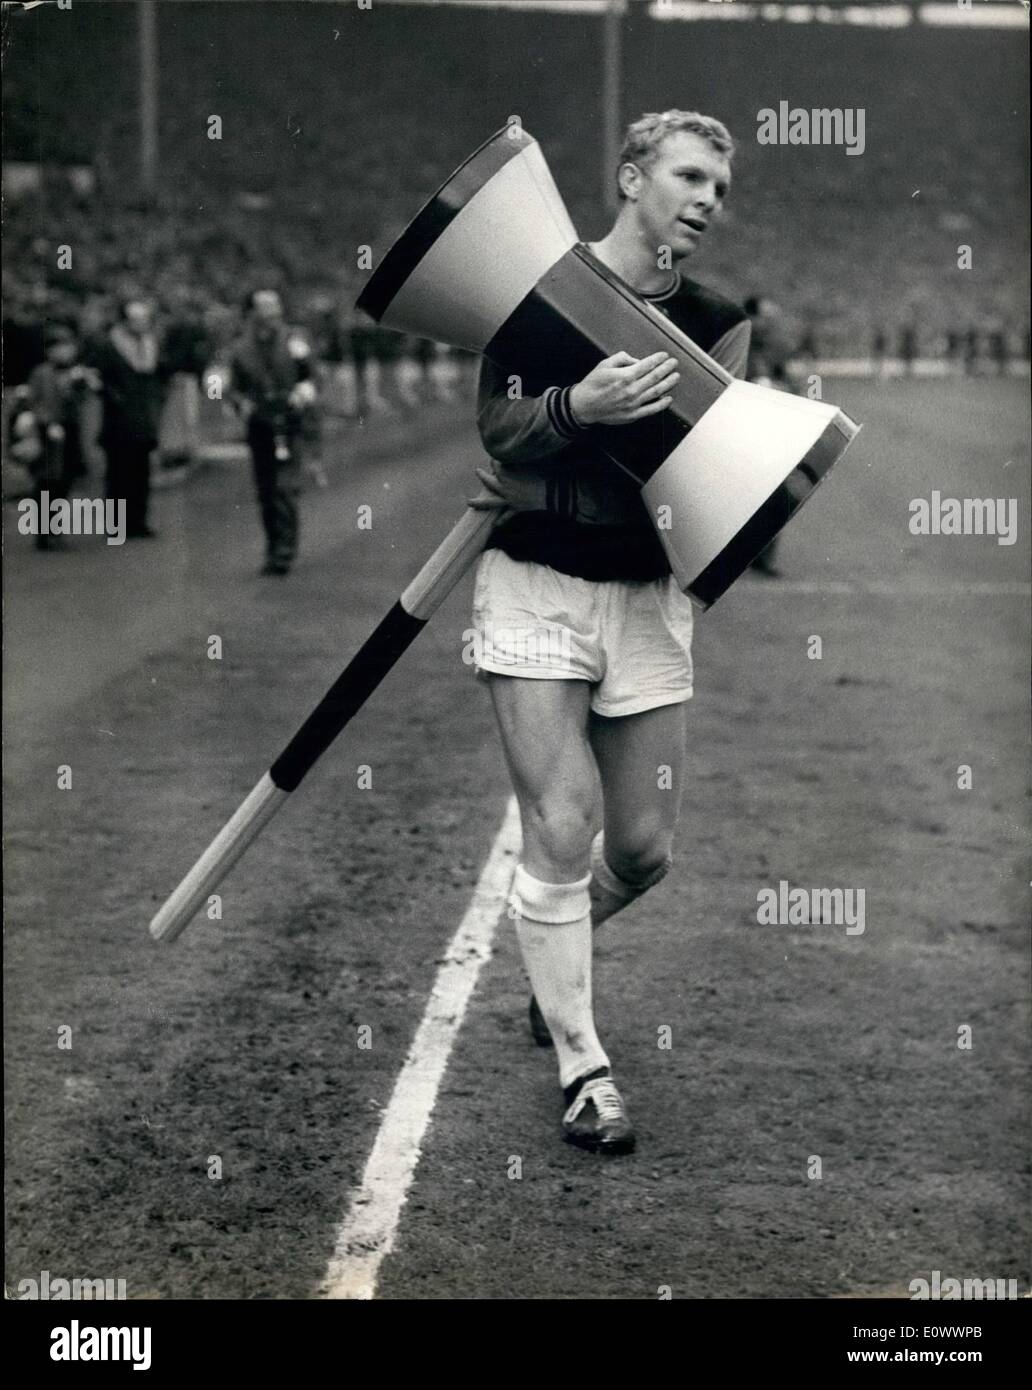 Mai 05, 1964 - West Ham United en finale de la coupe de la victoire 3-2 à Wembley contre Preston North End aujourd'hui. Photo montre West Ham Le Capitaine Bobby Moore est vu après le match tournant autour de l'emplacement avec un marteau géant. Banque D'Images